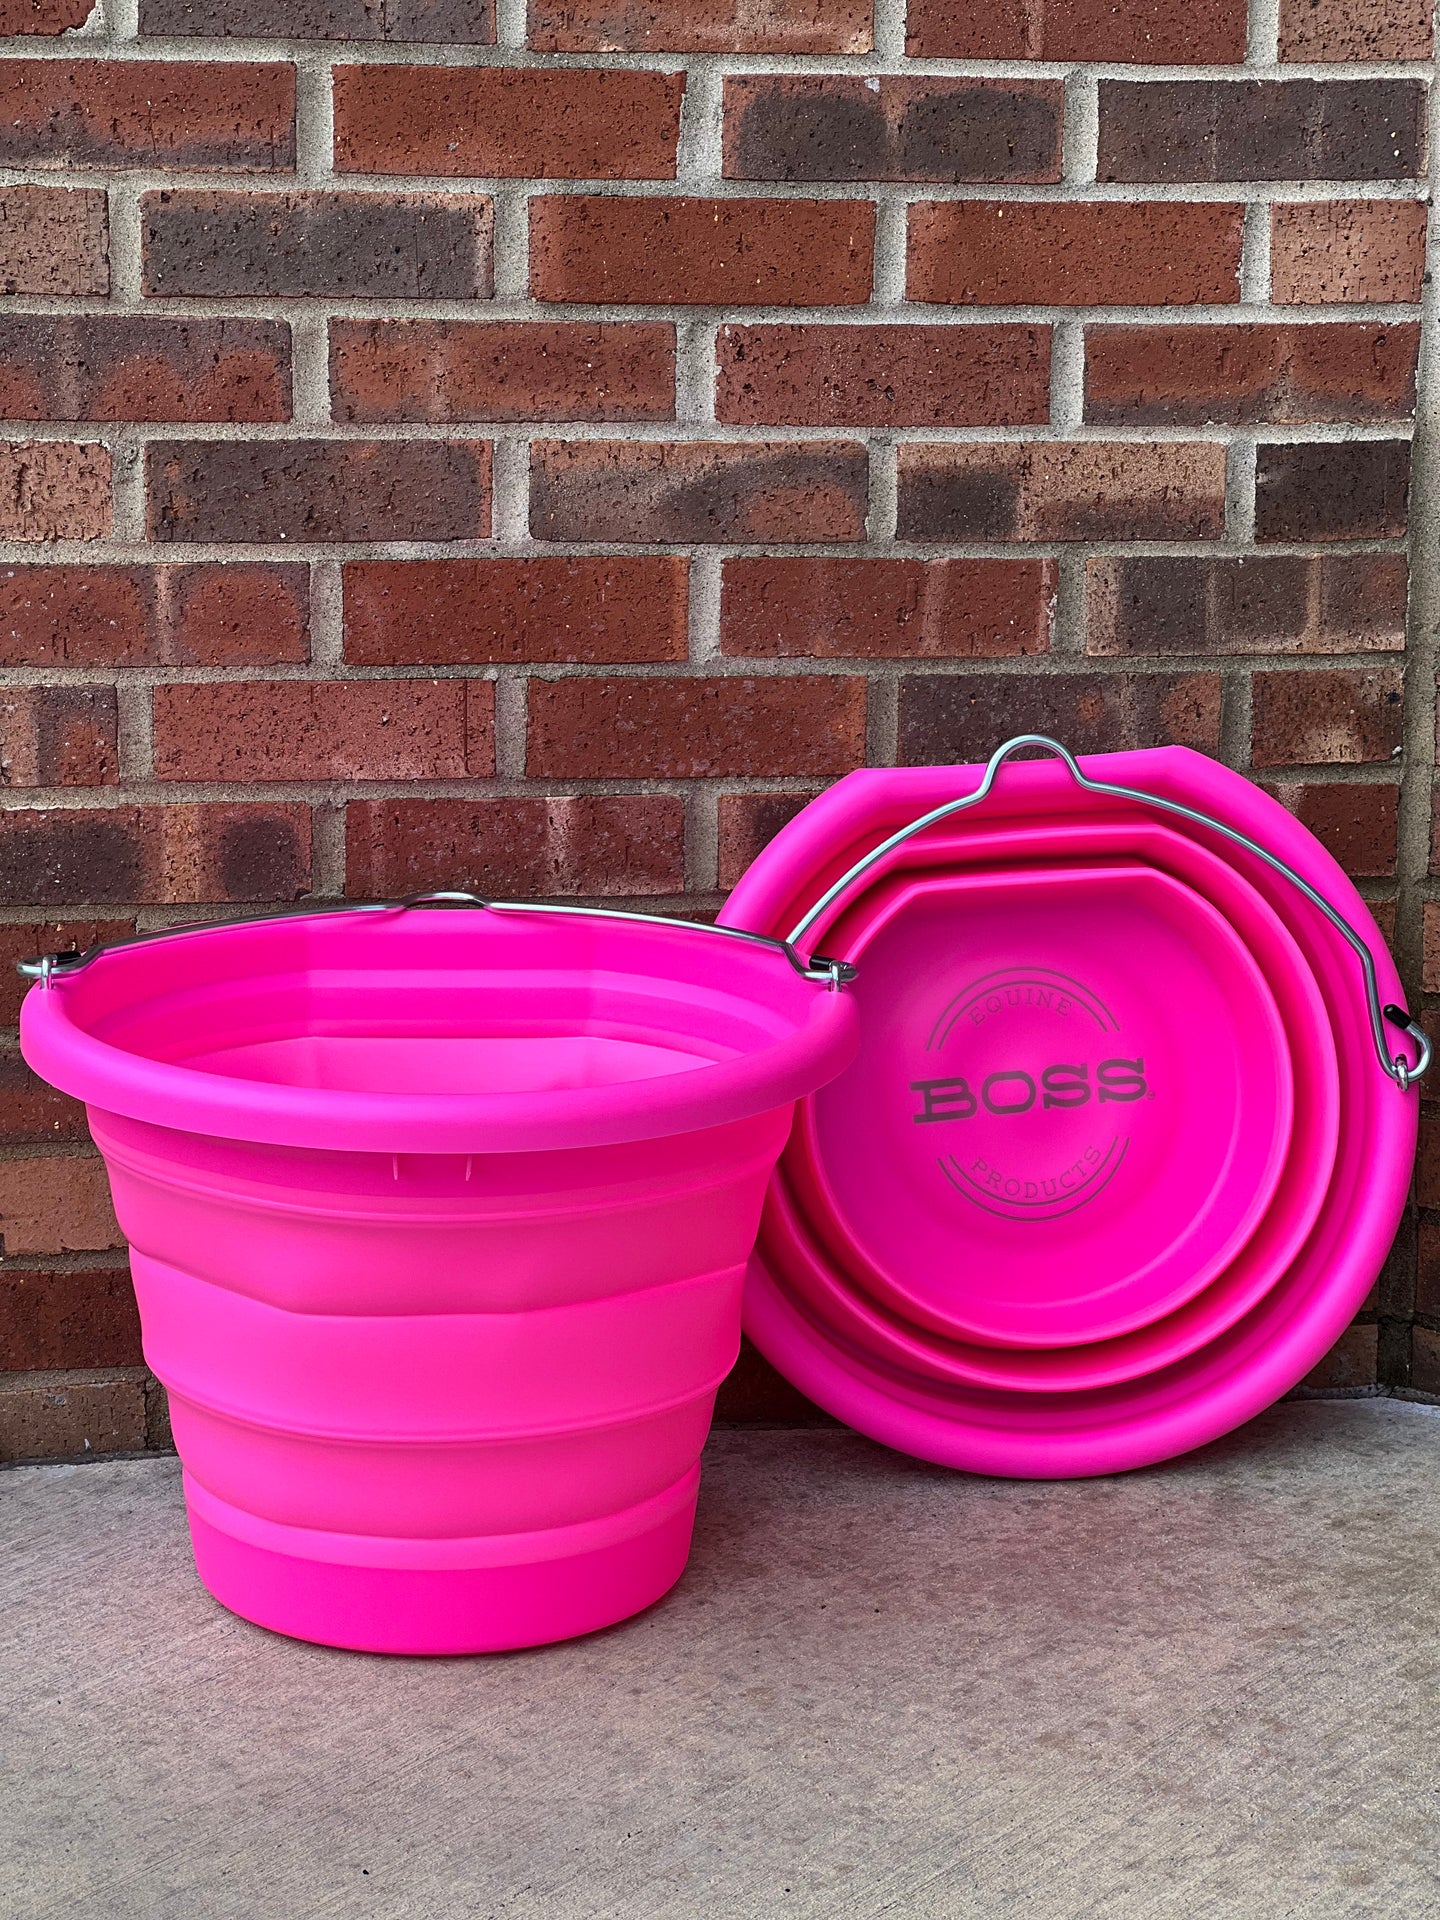 Hot Pink Boss Bucket